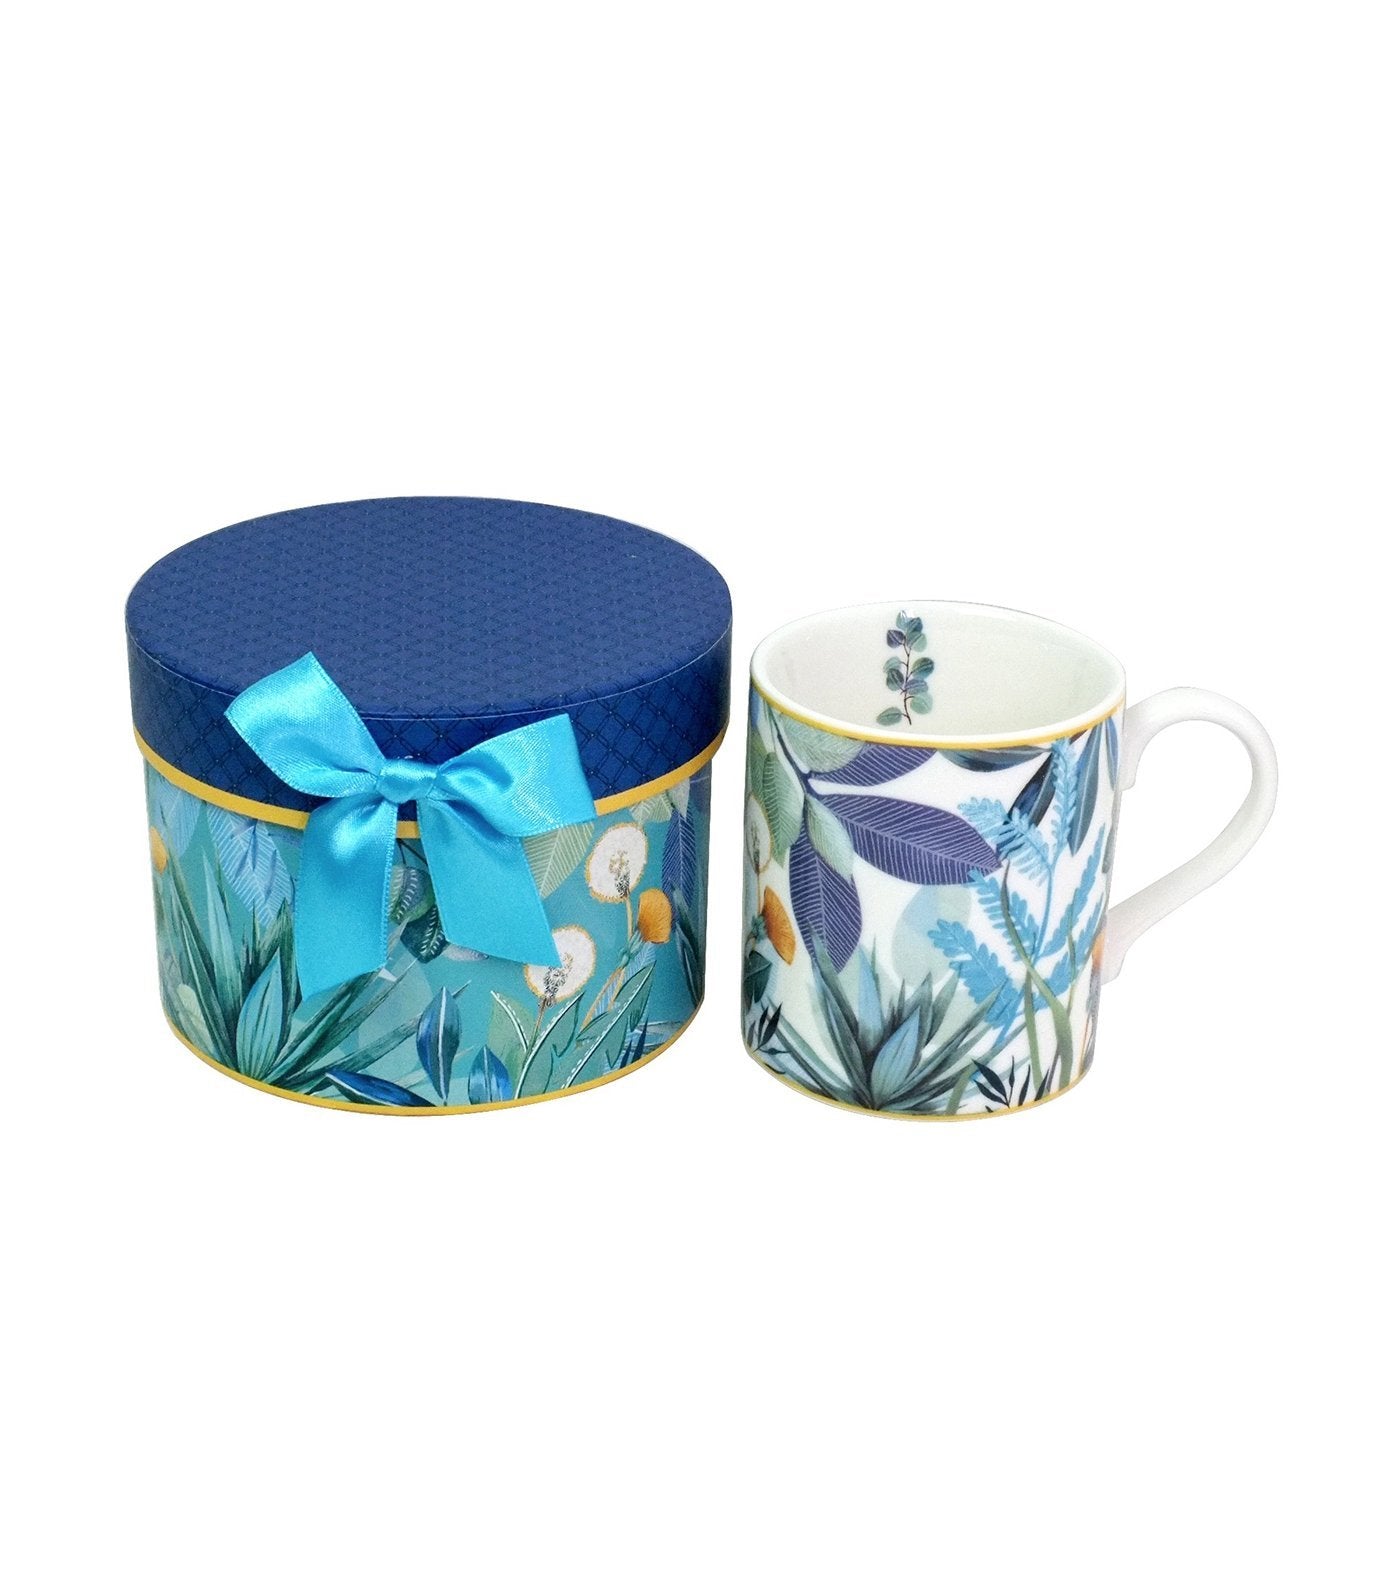 Sugarplum Lifestyle Botanique Bleu Porcelain Collection